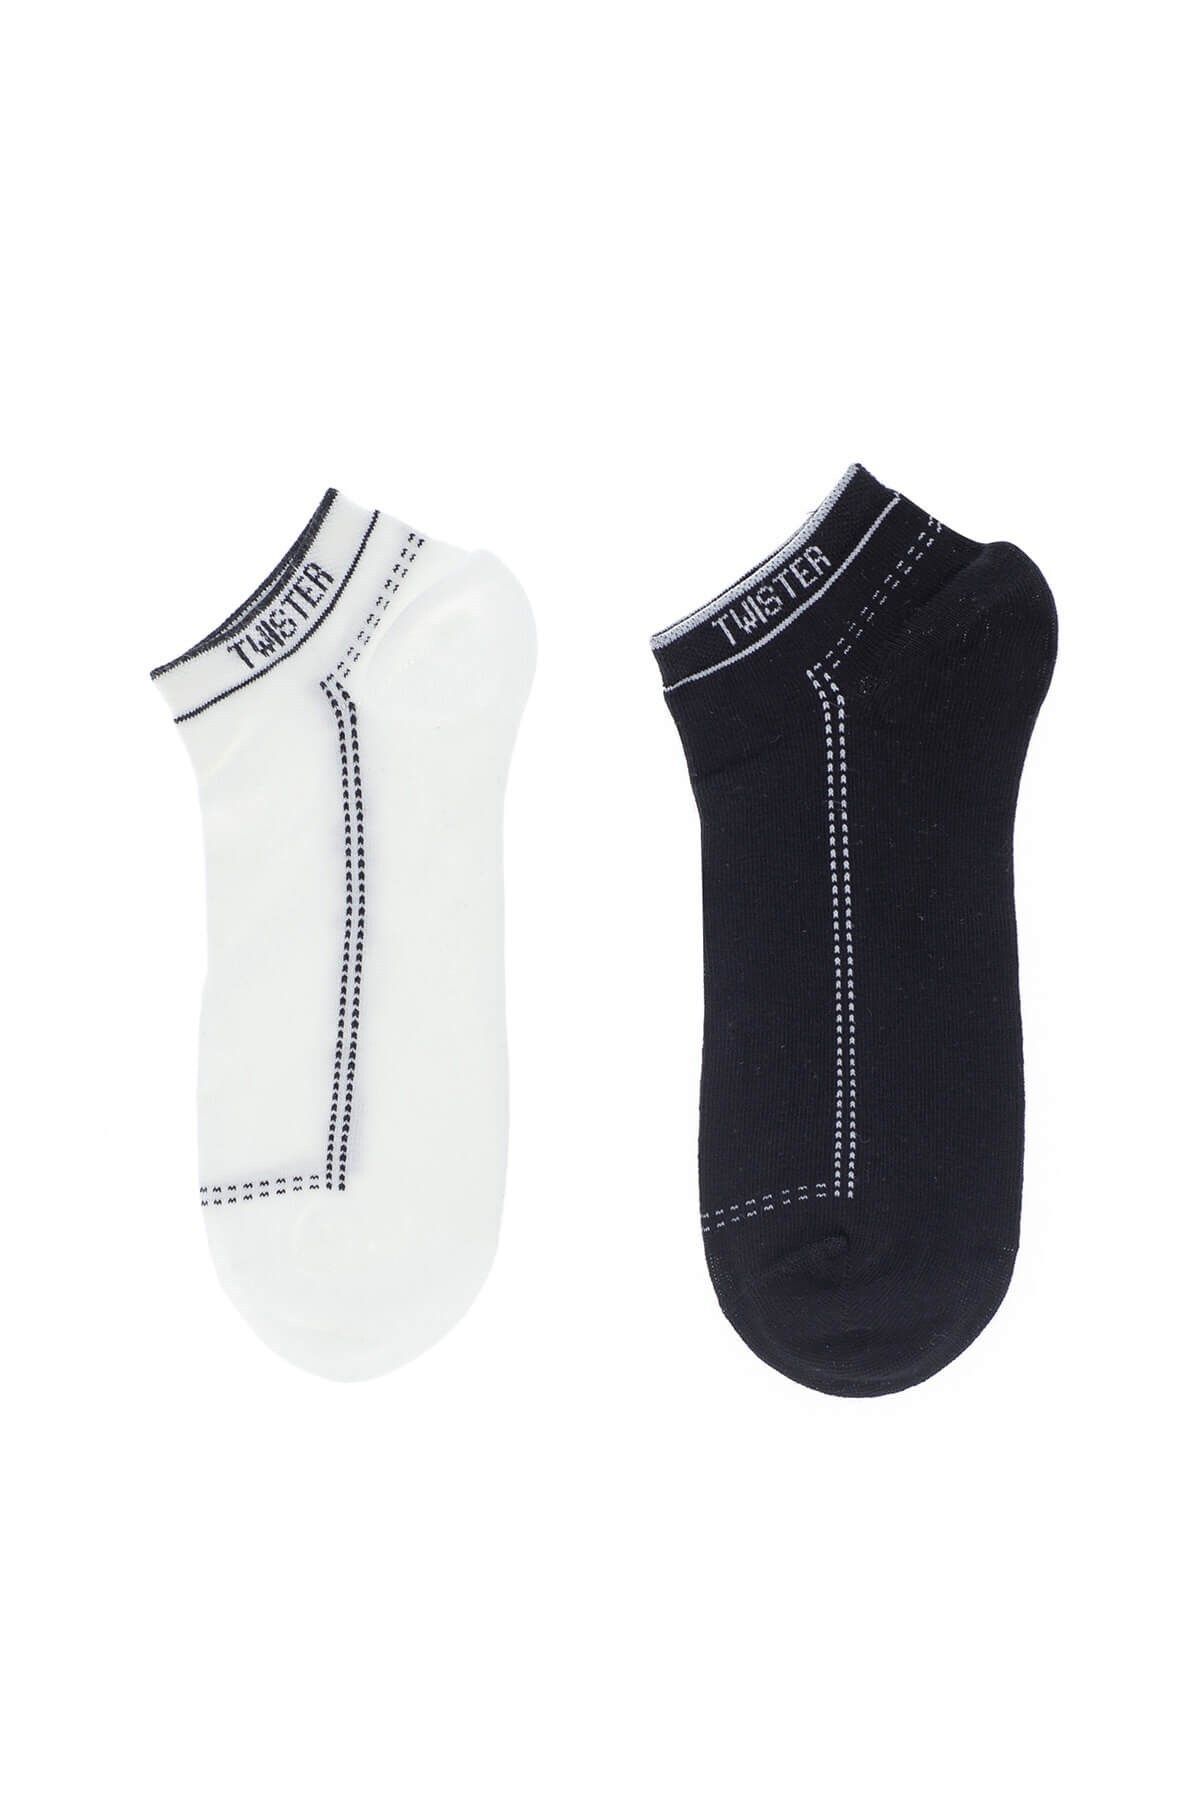 Twister Jeans Erkek Çorap Ecp Düz Patik Çorap 1008 Sıyah-beyaz